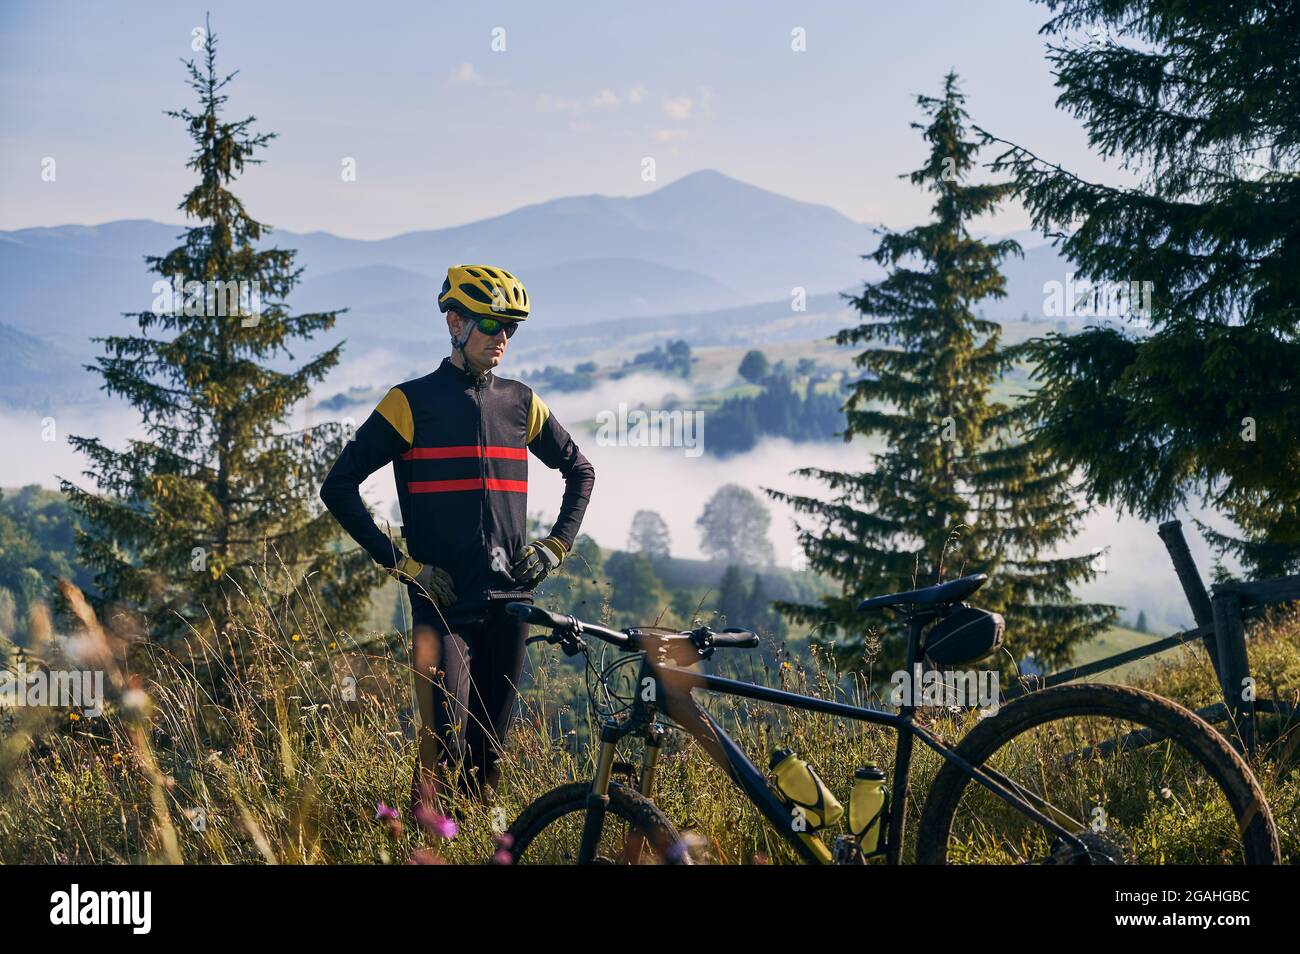 Radfahrer in Uniform und Helm, stehend auf einem grasbewachsenen Hügel. Schöne Berglandschaft im Hintergrund. Am frühen Morgen in den neblig sonnigen Bergen. Fahrrad auf verschwommenem Vordergrund. Stockfoto